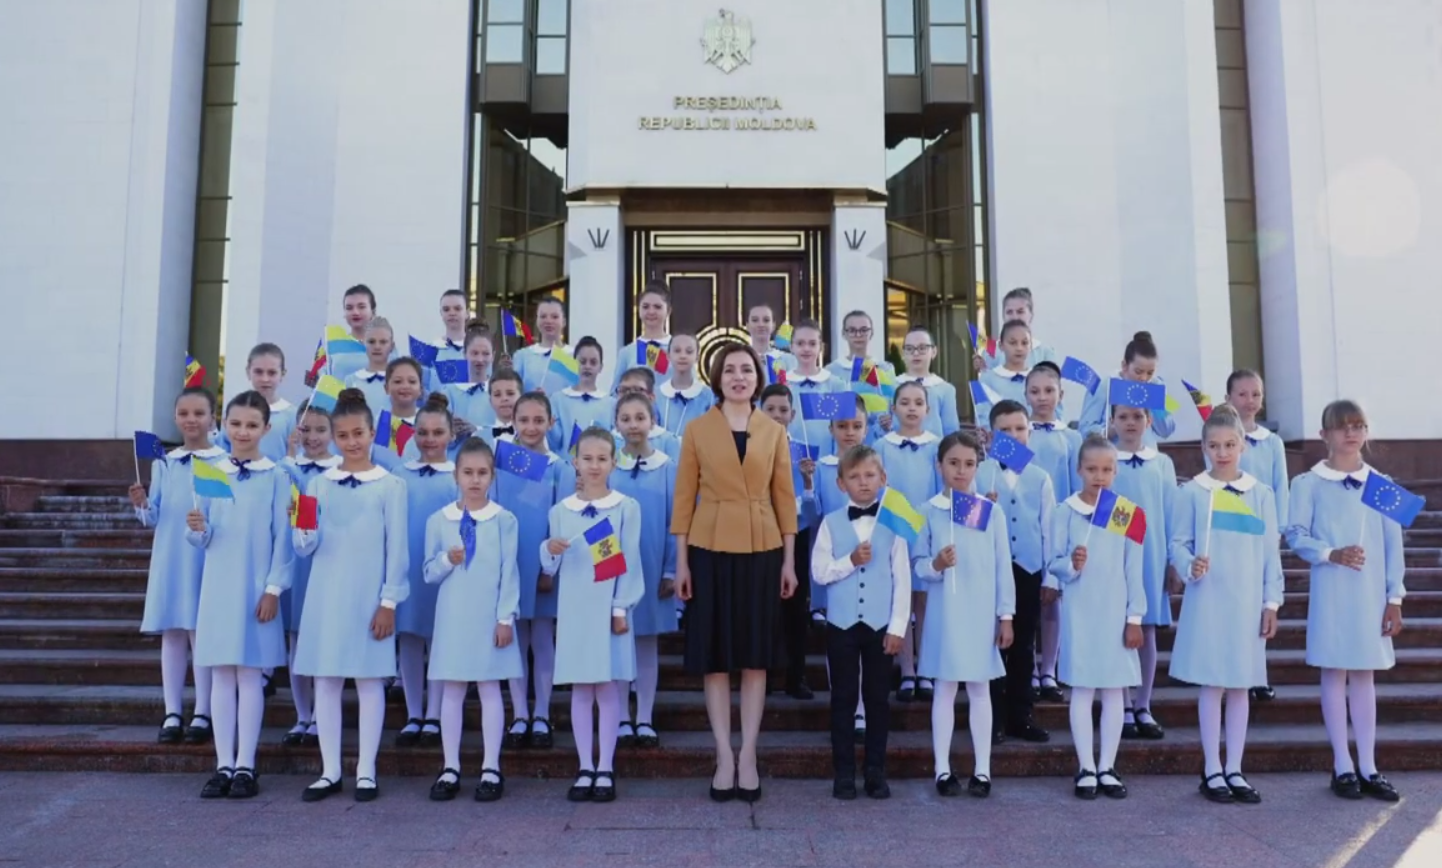 Санду поздравила Украину с Днем Независимости трогательным обращением, однако возникла неточность. Видео